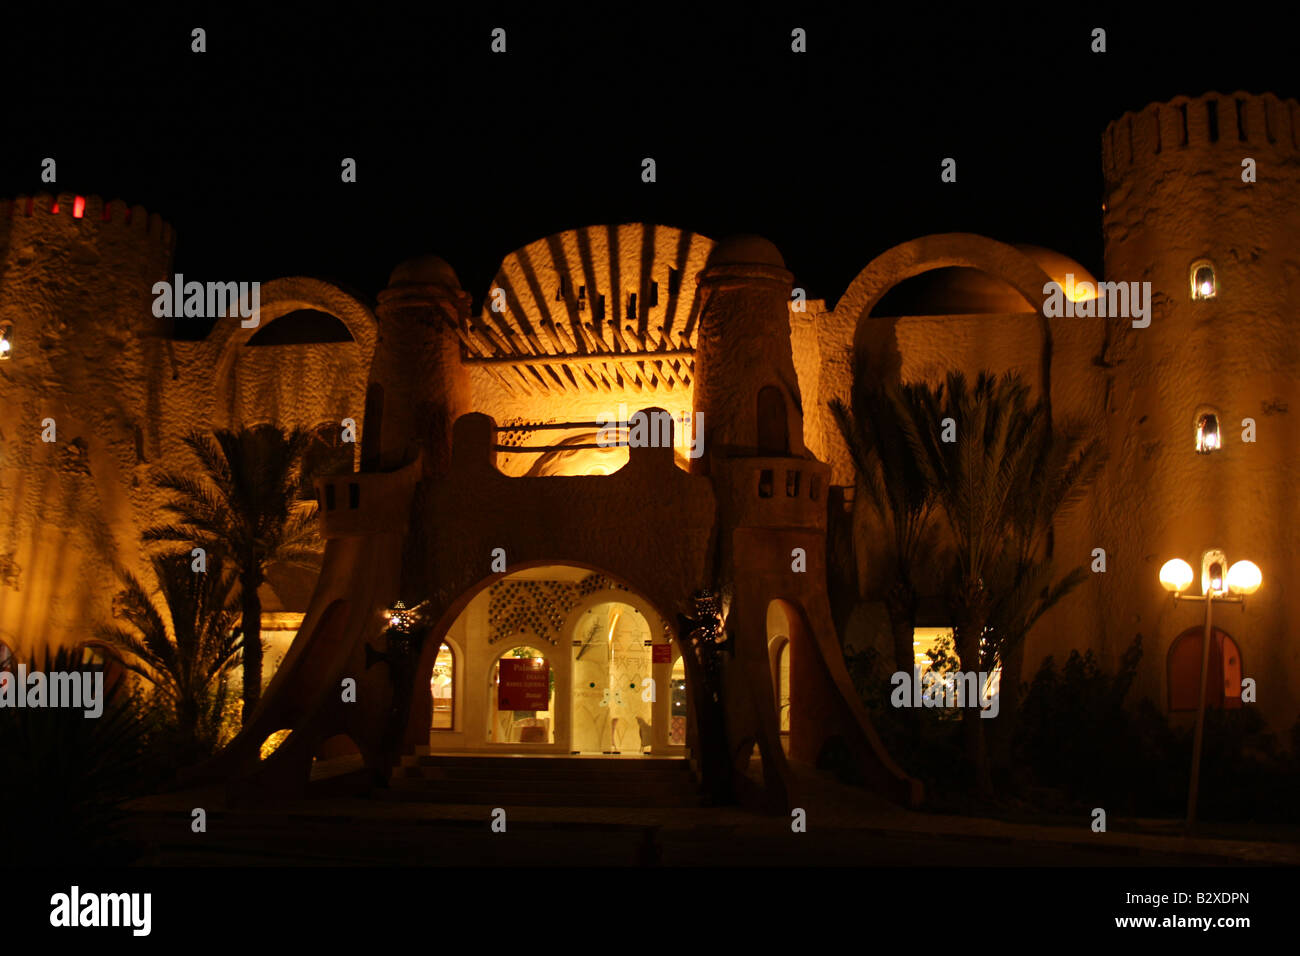 Castillo de estilo árabe iluminado por luces de noche en África, Túnez. Foto de stock